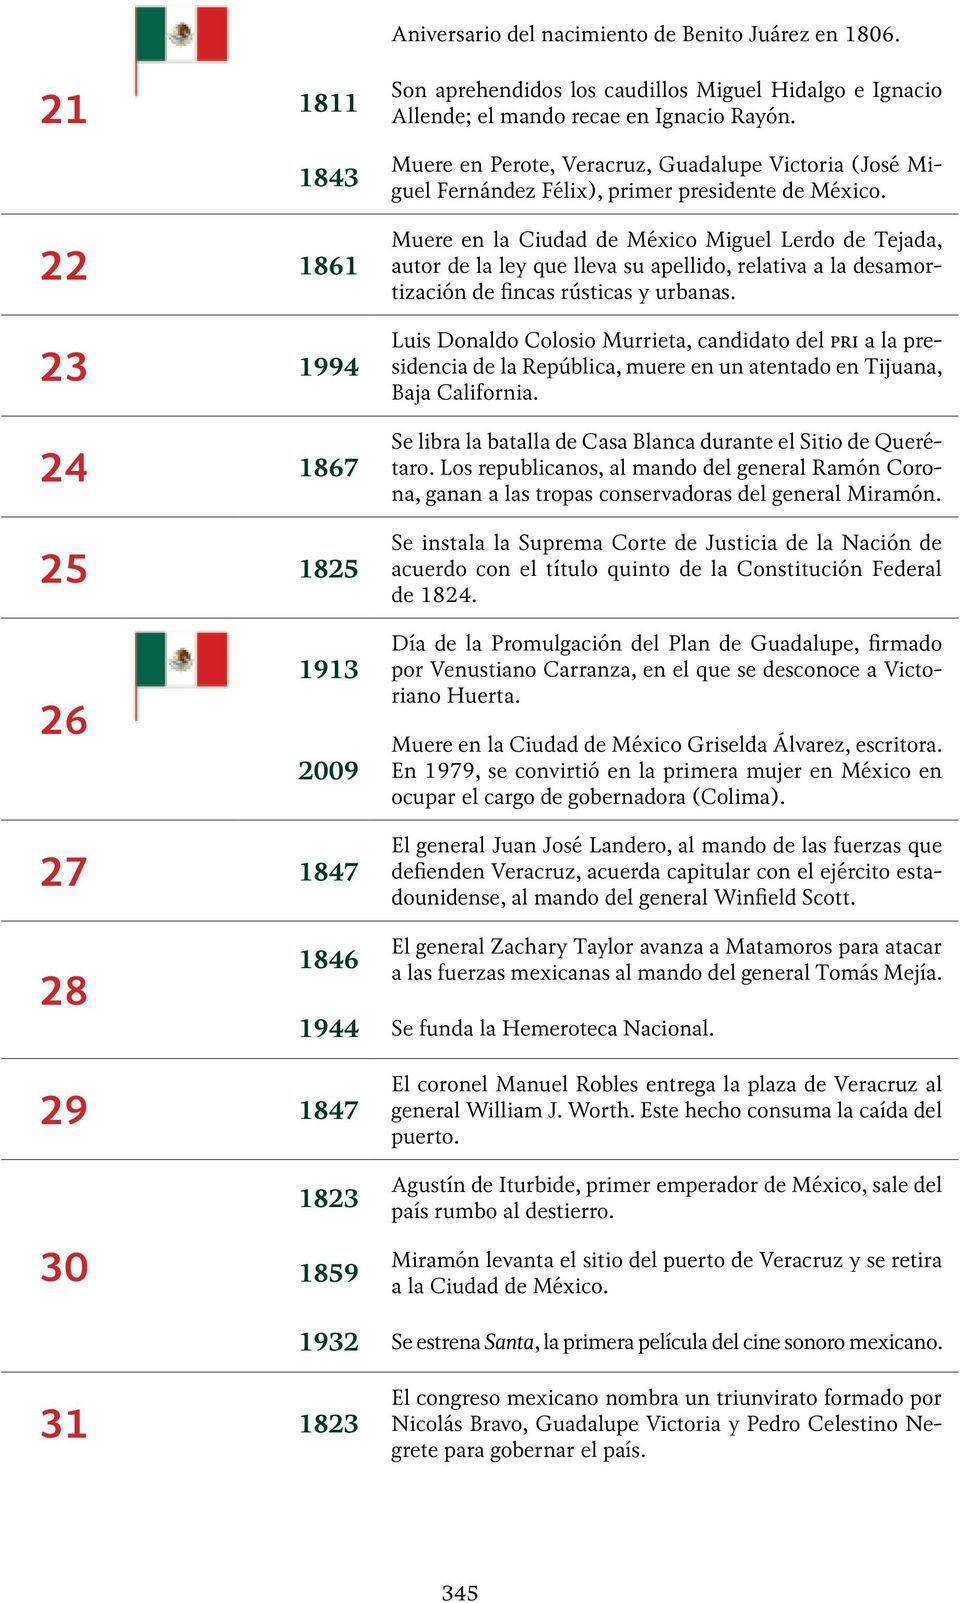 22 1861 23 1994 24 1867 25 1825 Muere en la Ciudad de México Miguel Lerdo de Tejada, autor de la ley que lleva su apellido, relativa a la desamortización de fincas rústicas y urbanas.